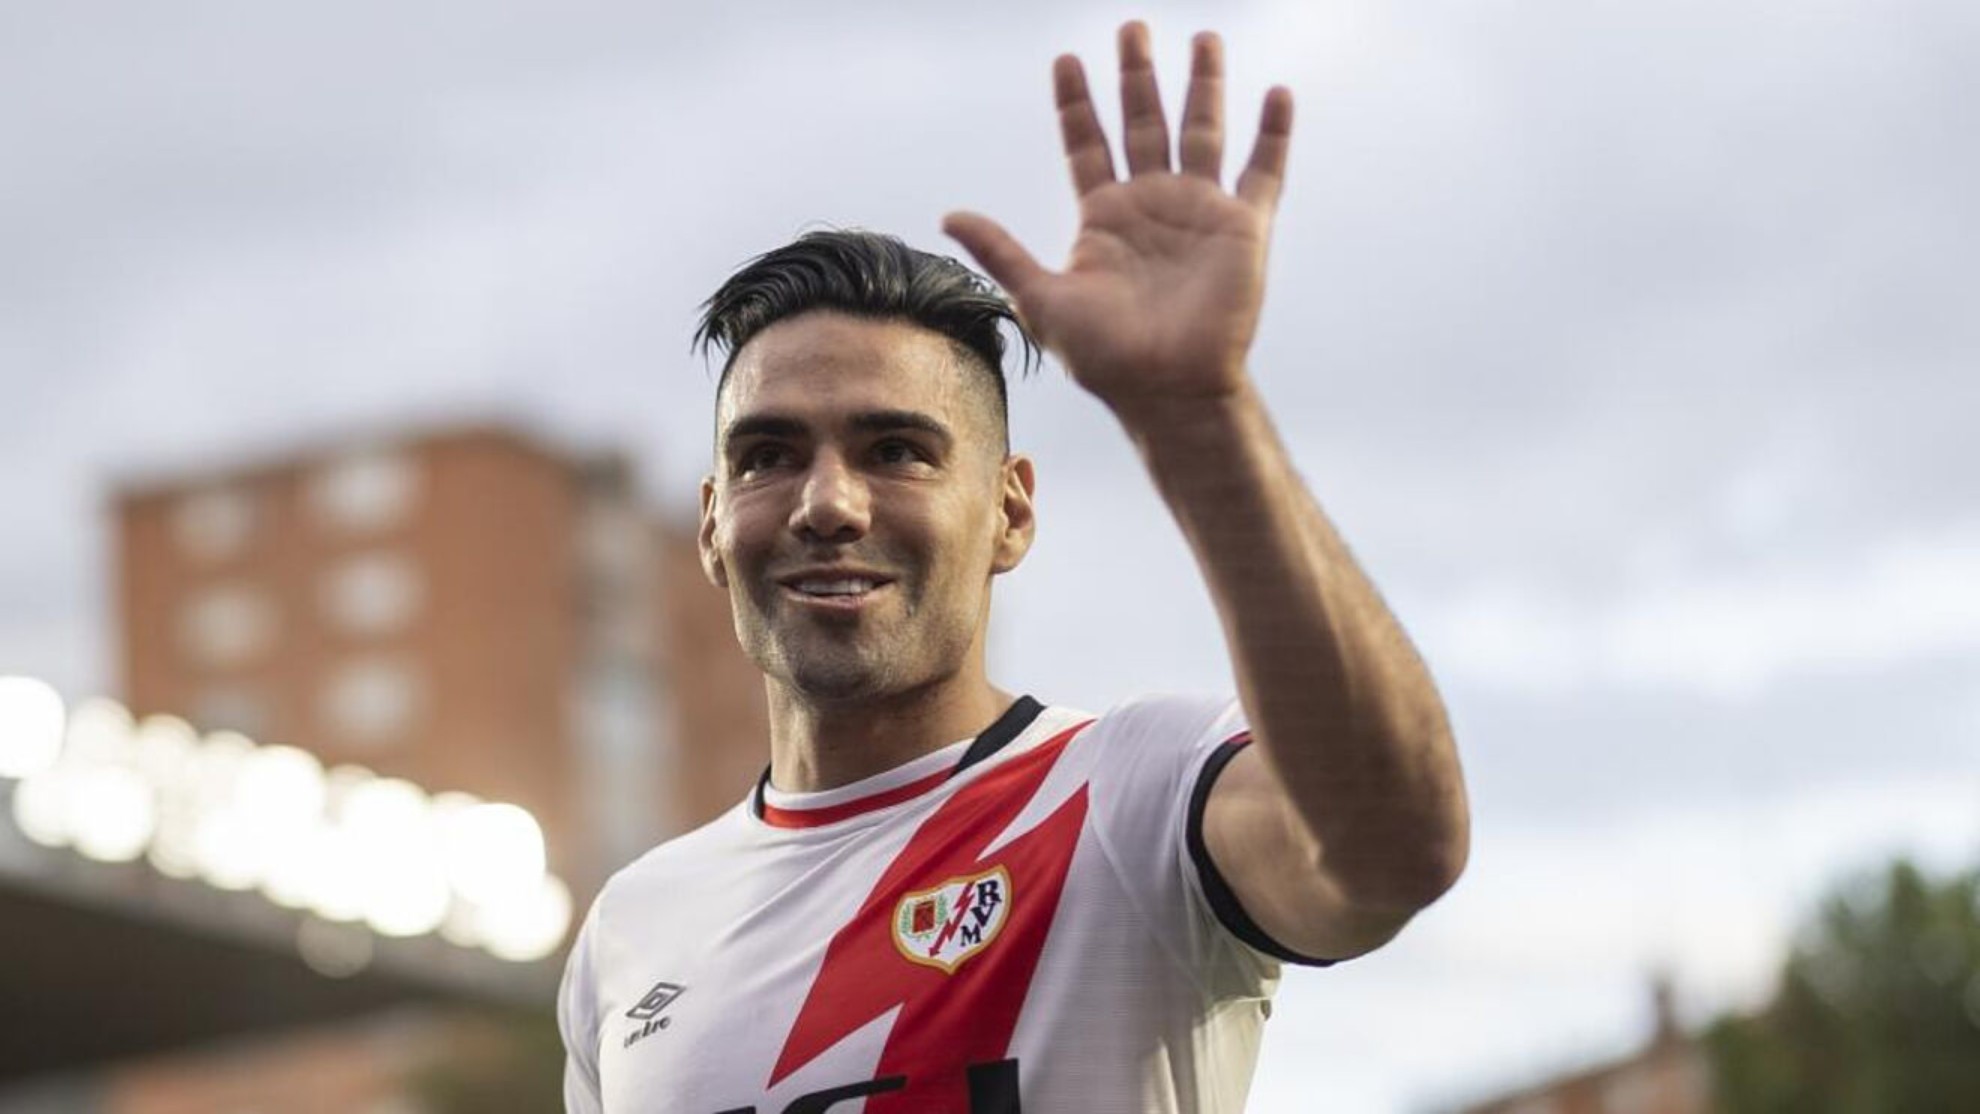 Liga Betplay Dimayor: Falcao defiende a los futbolistas en Colombia: “Necesitan ser escuchados”